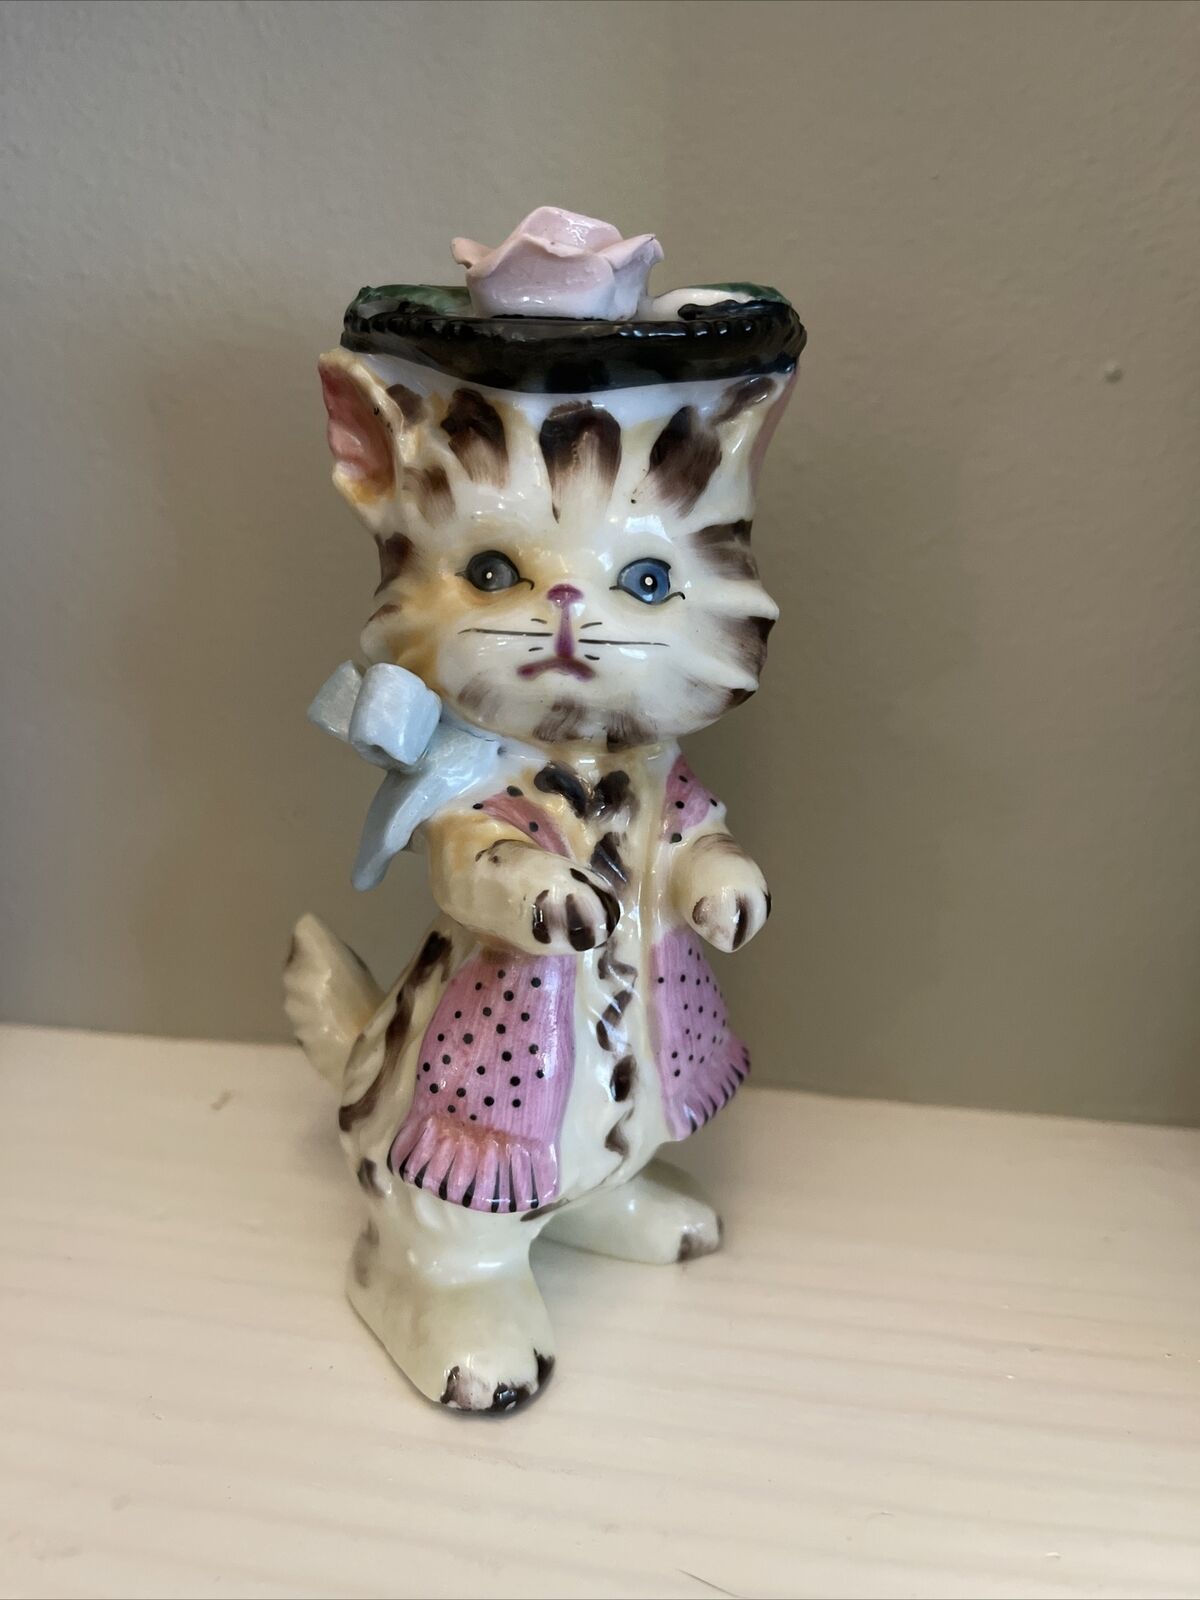 Fancy Lefton Porcelain Kitten Figurine Dressed Up Made In Japan Floral Hat + Bow